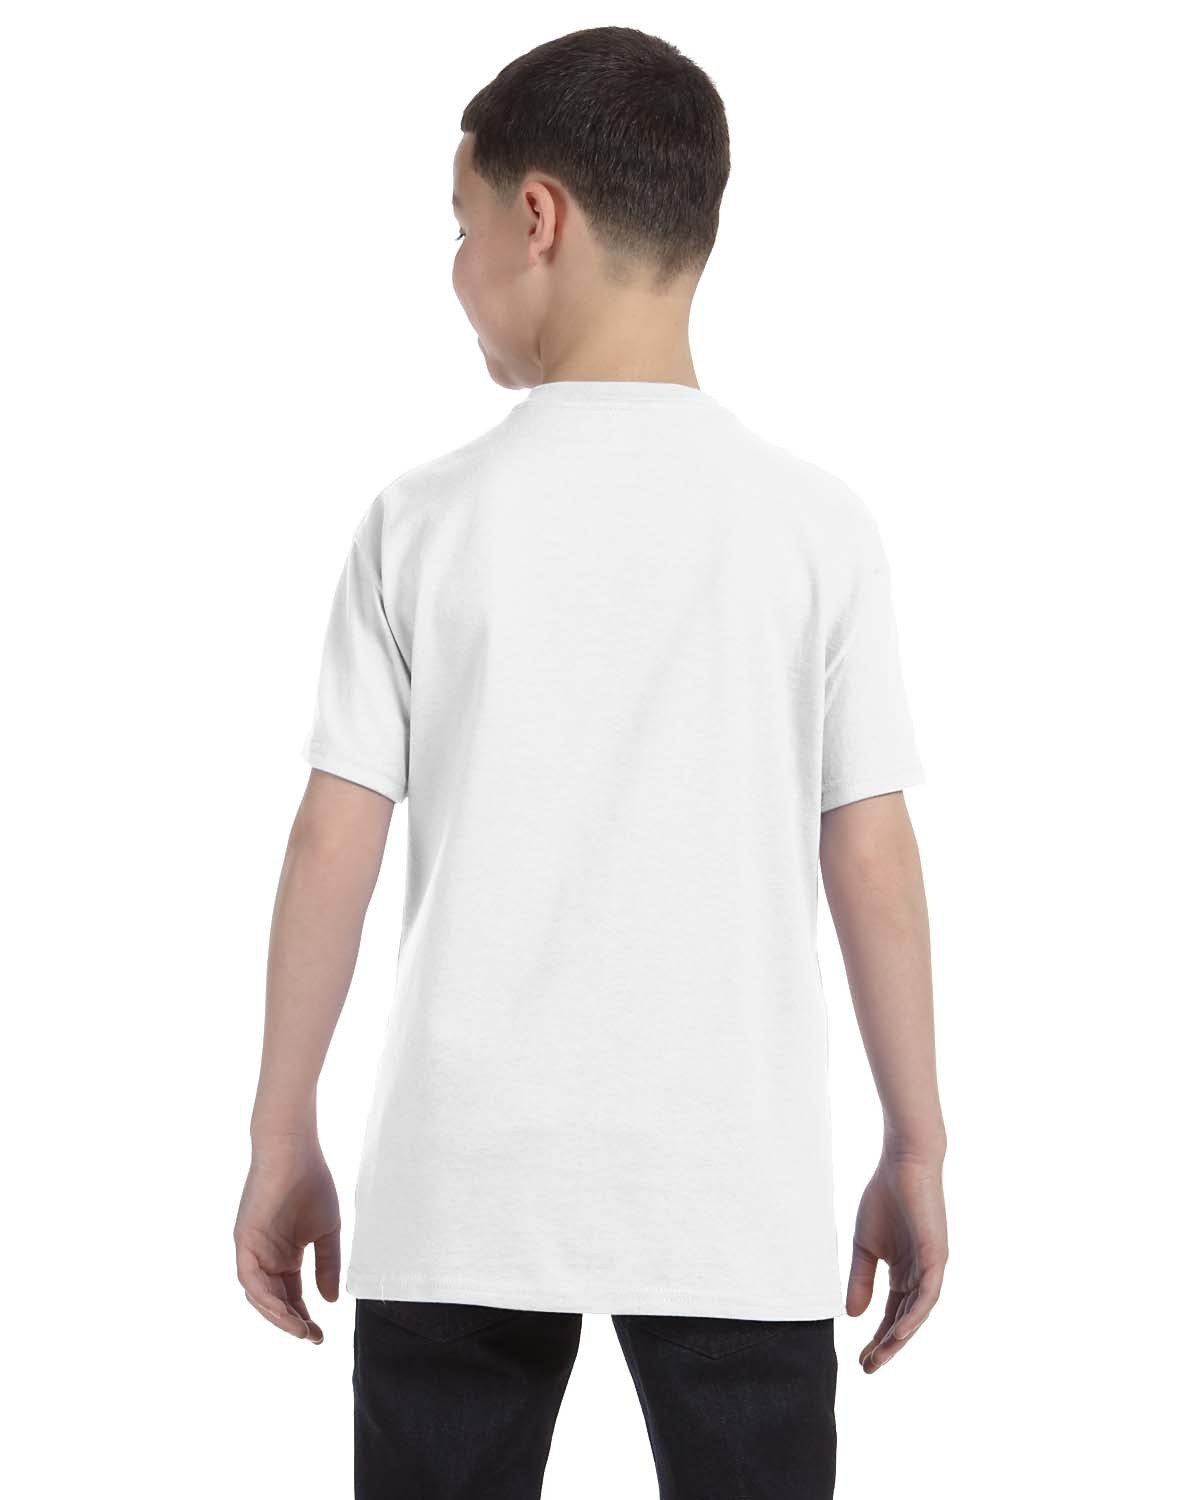 29B-Jerzees-WHITE-Jerzees-T-Shirts-2